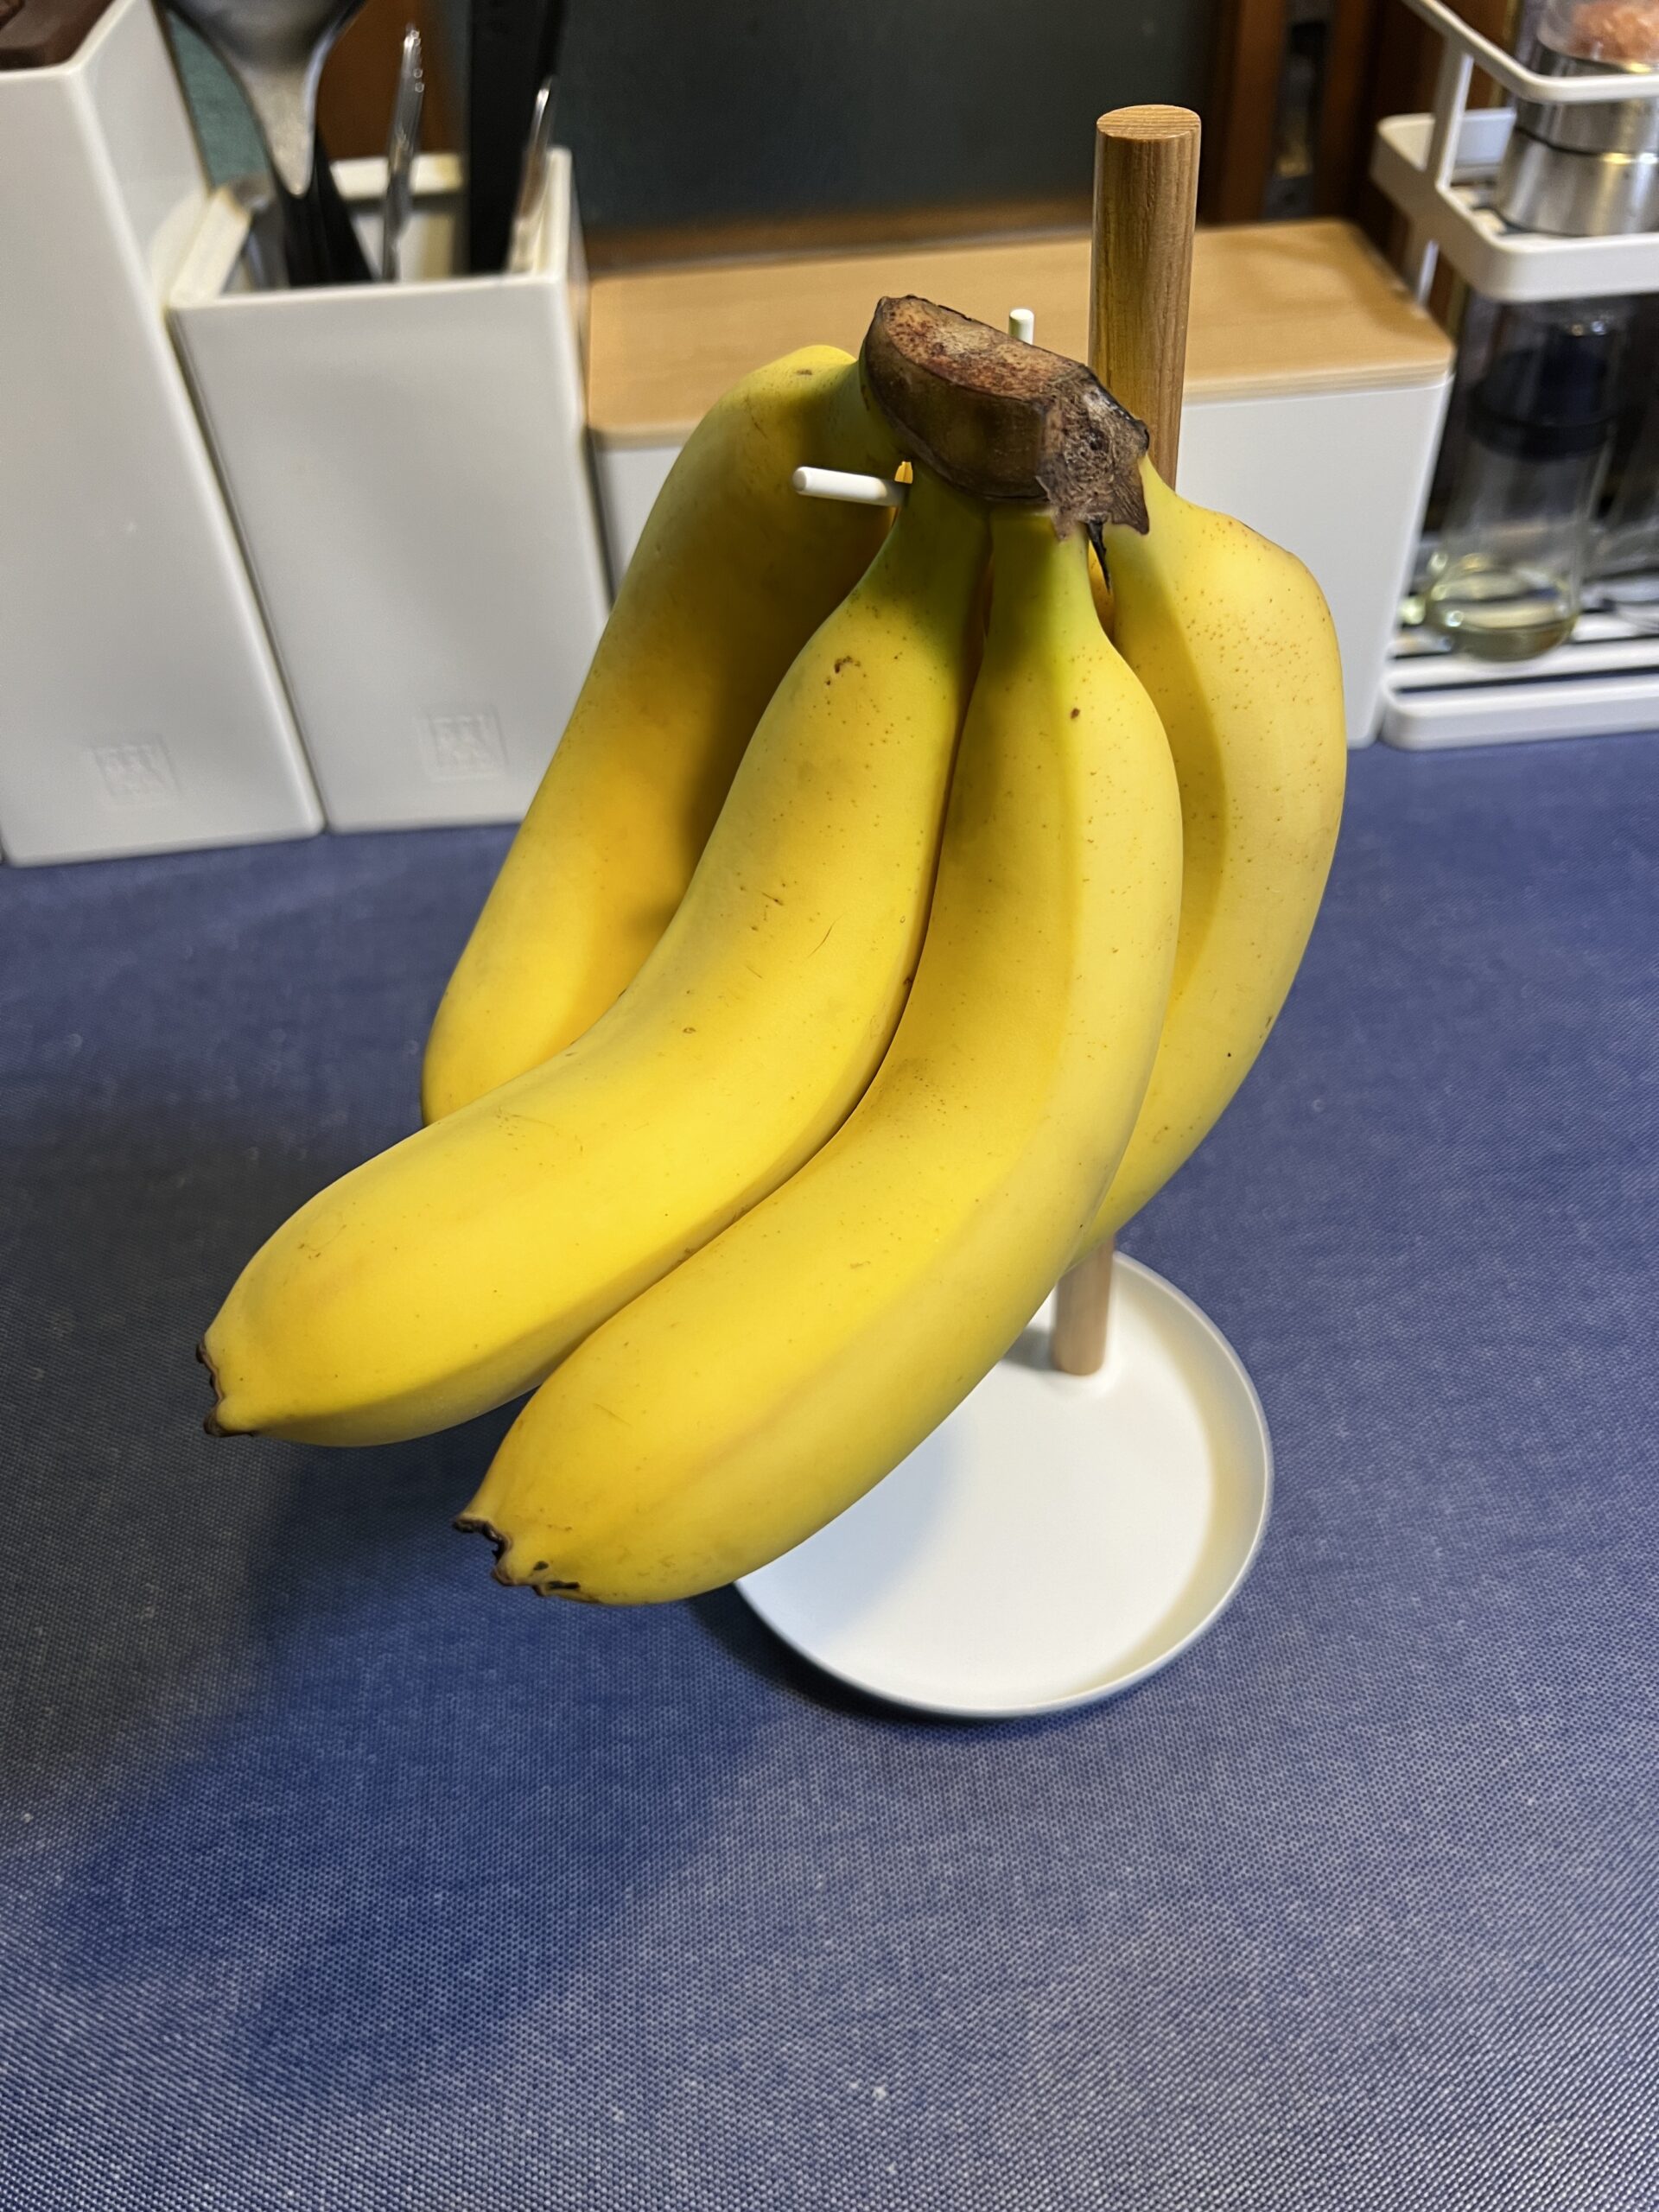 スタンドに吊るした1房のバナナ